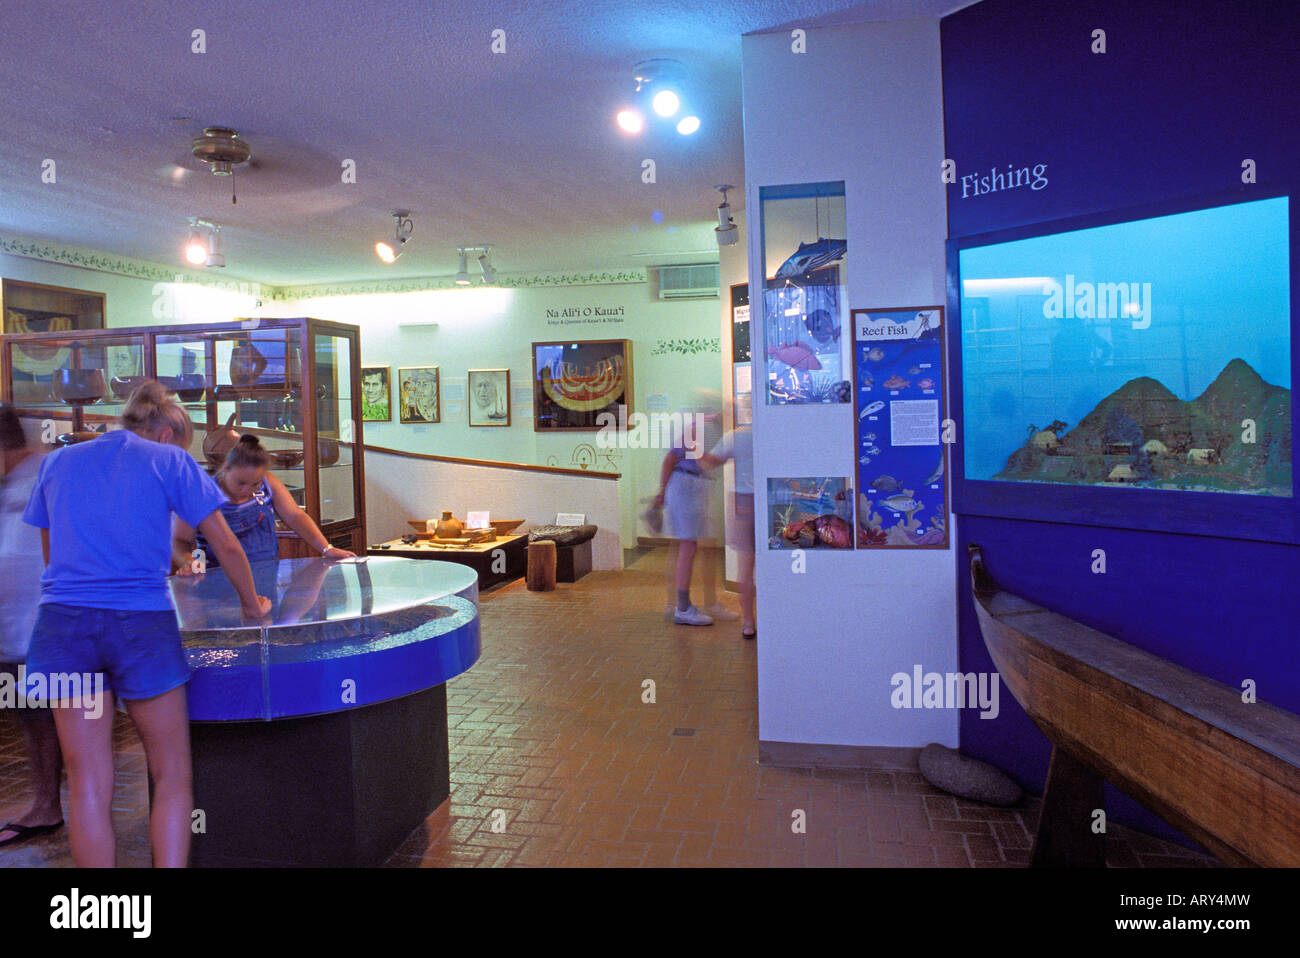 Les touristes voir des expositions au Musée de Kauai dans la région de Lihue. Musée met en valeur l'histoire et l'art des Kauai depuis les temps anciens jusqu'à présent Banque D'Images